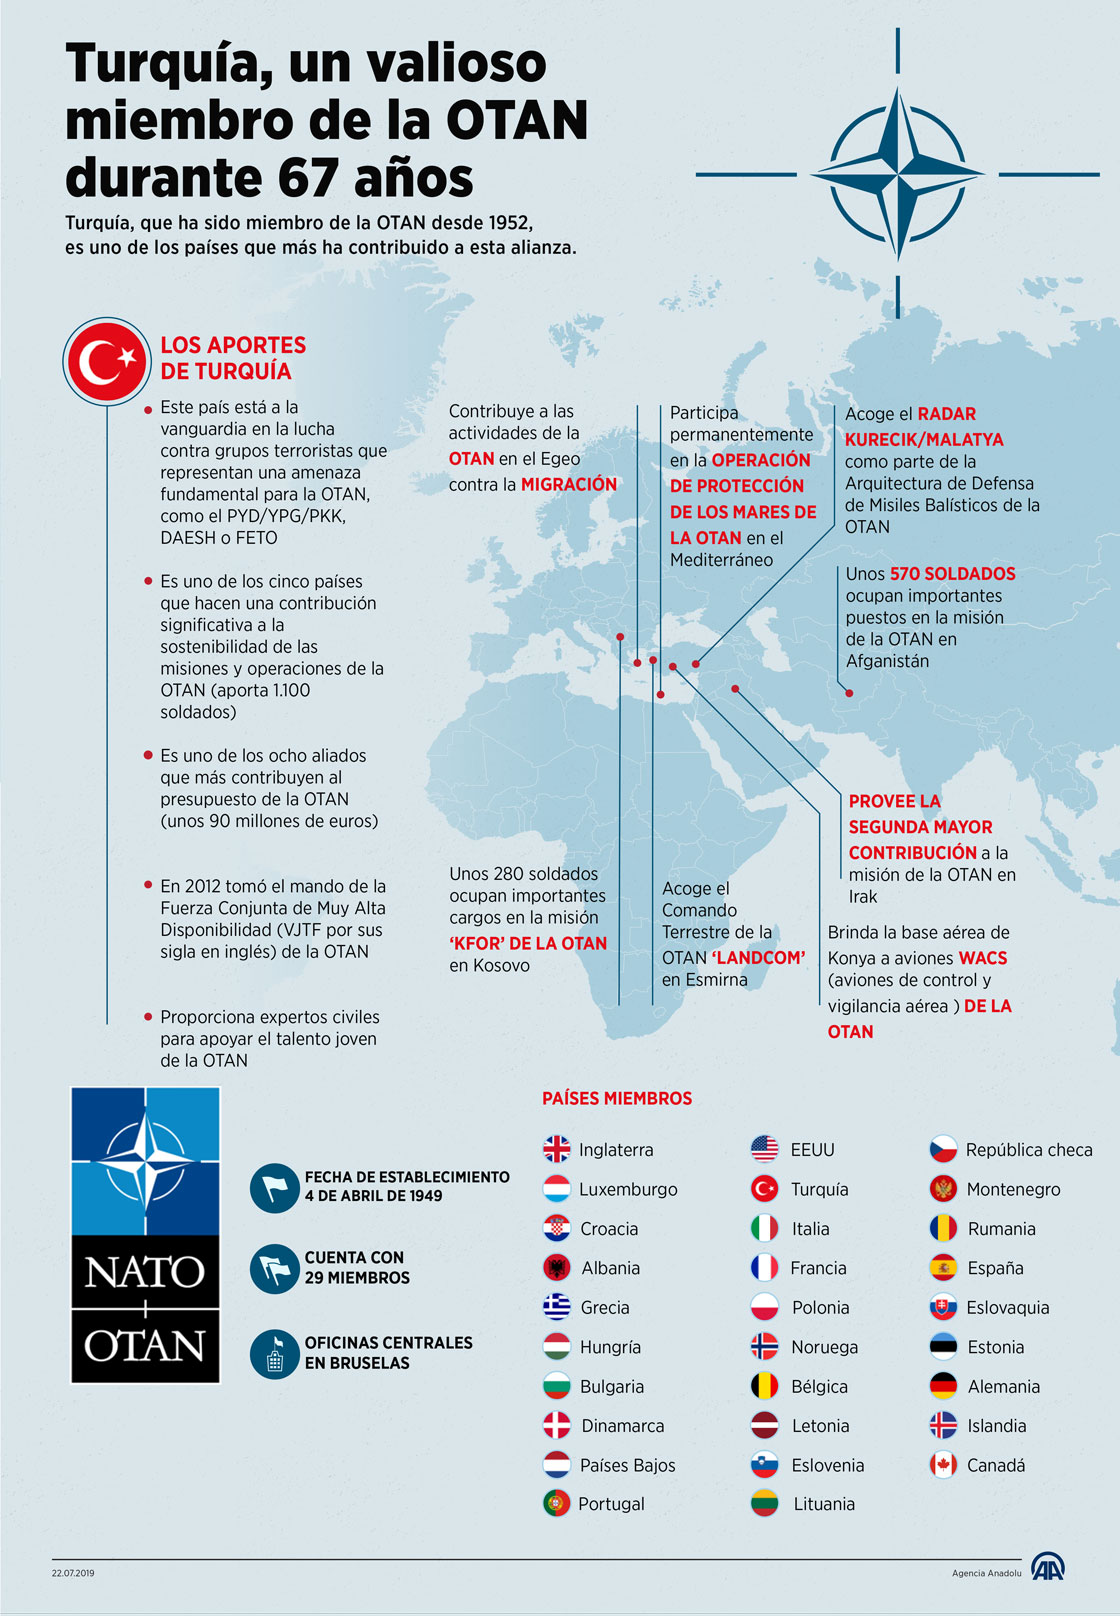 Turquía, un valioso miembro de la OTAN durante 67 años